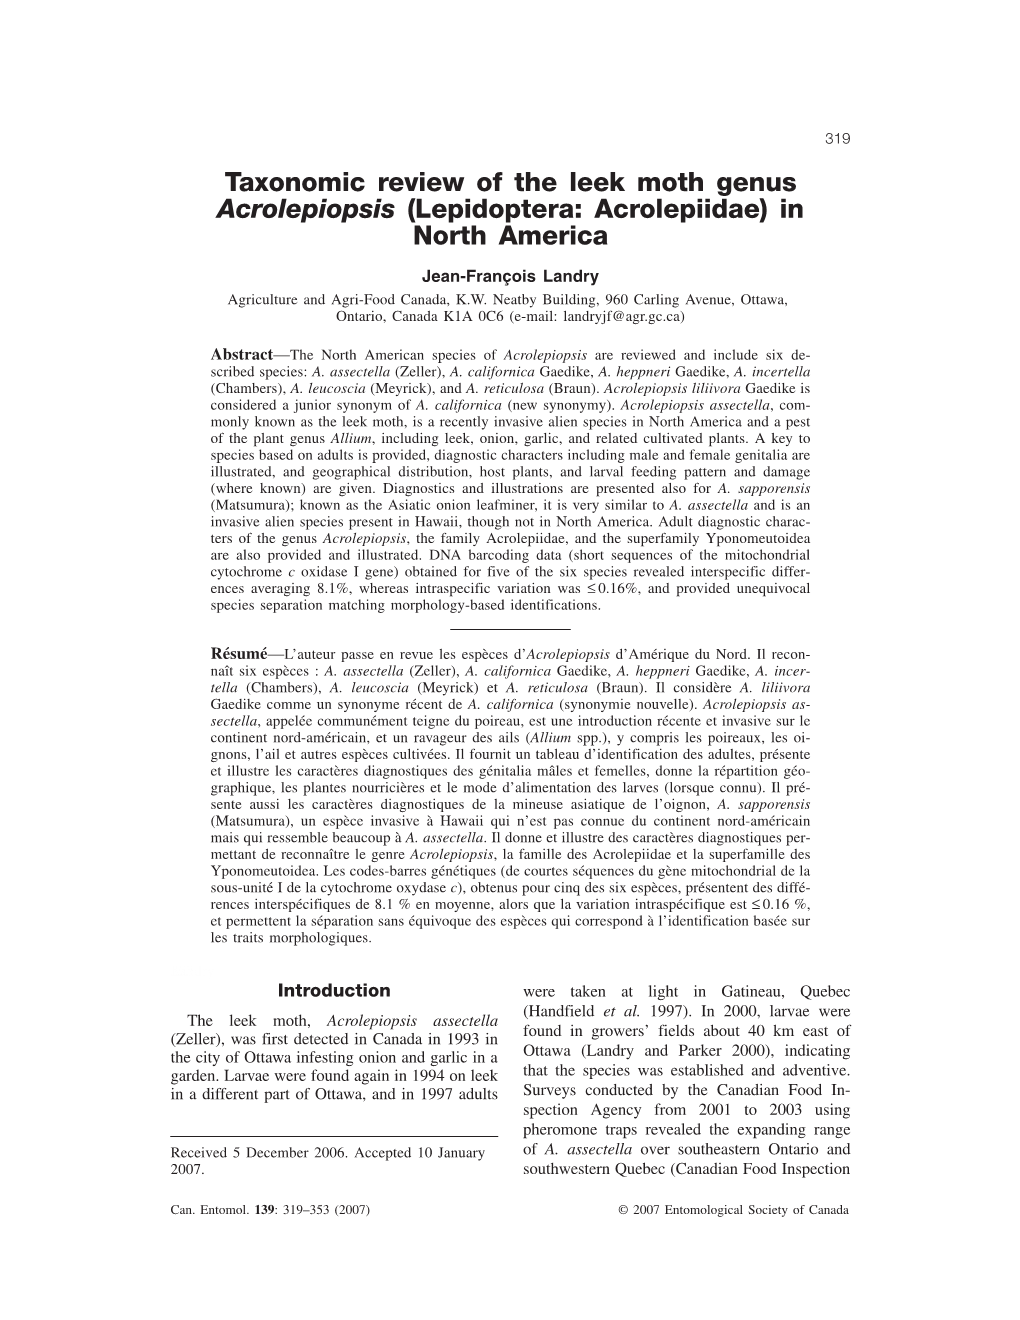 Taxonomic Review of the Leek Moth Genus Acrolepiopsis (Lepidoptera: Acrolepiidae) in North America